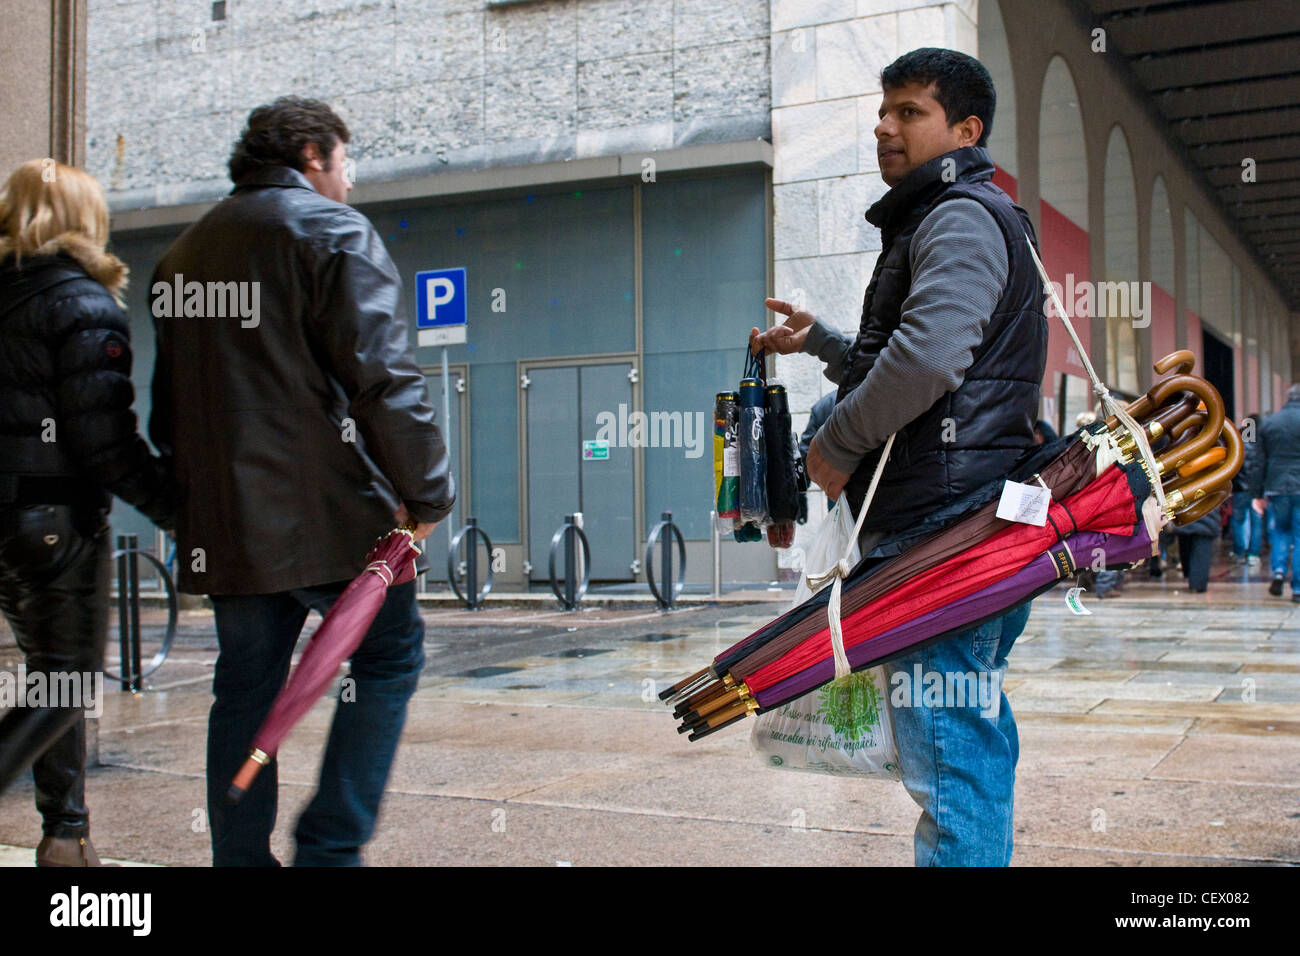 Immigrati bengalesi che vende ombrelli, Milano, Italia Foto Stock